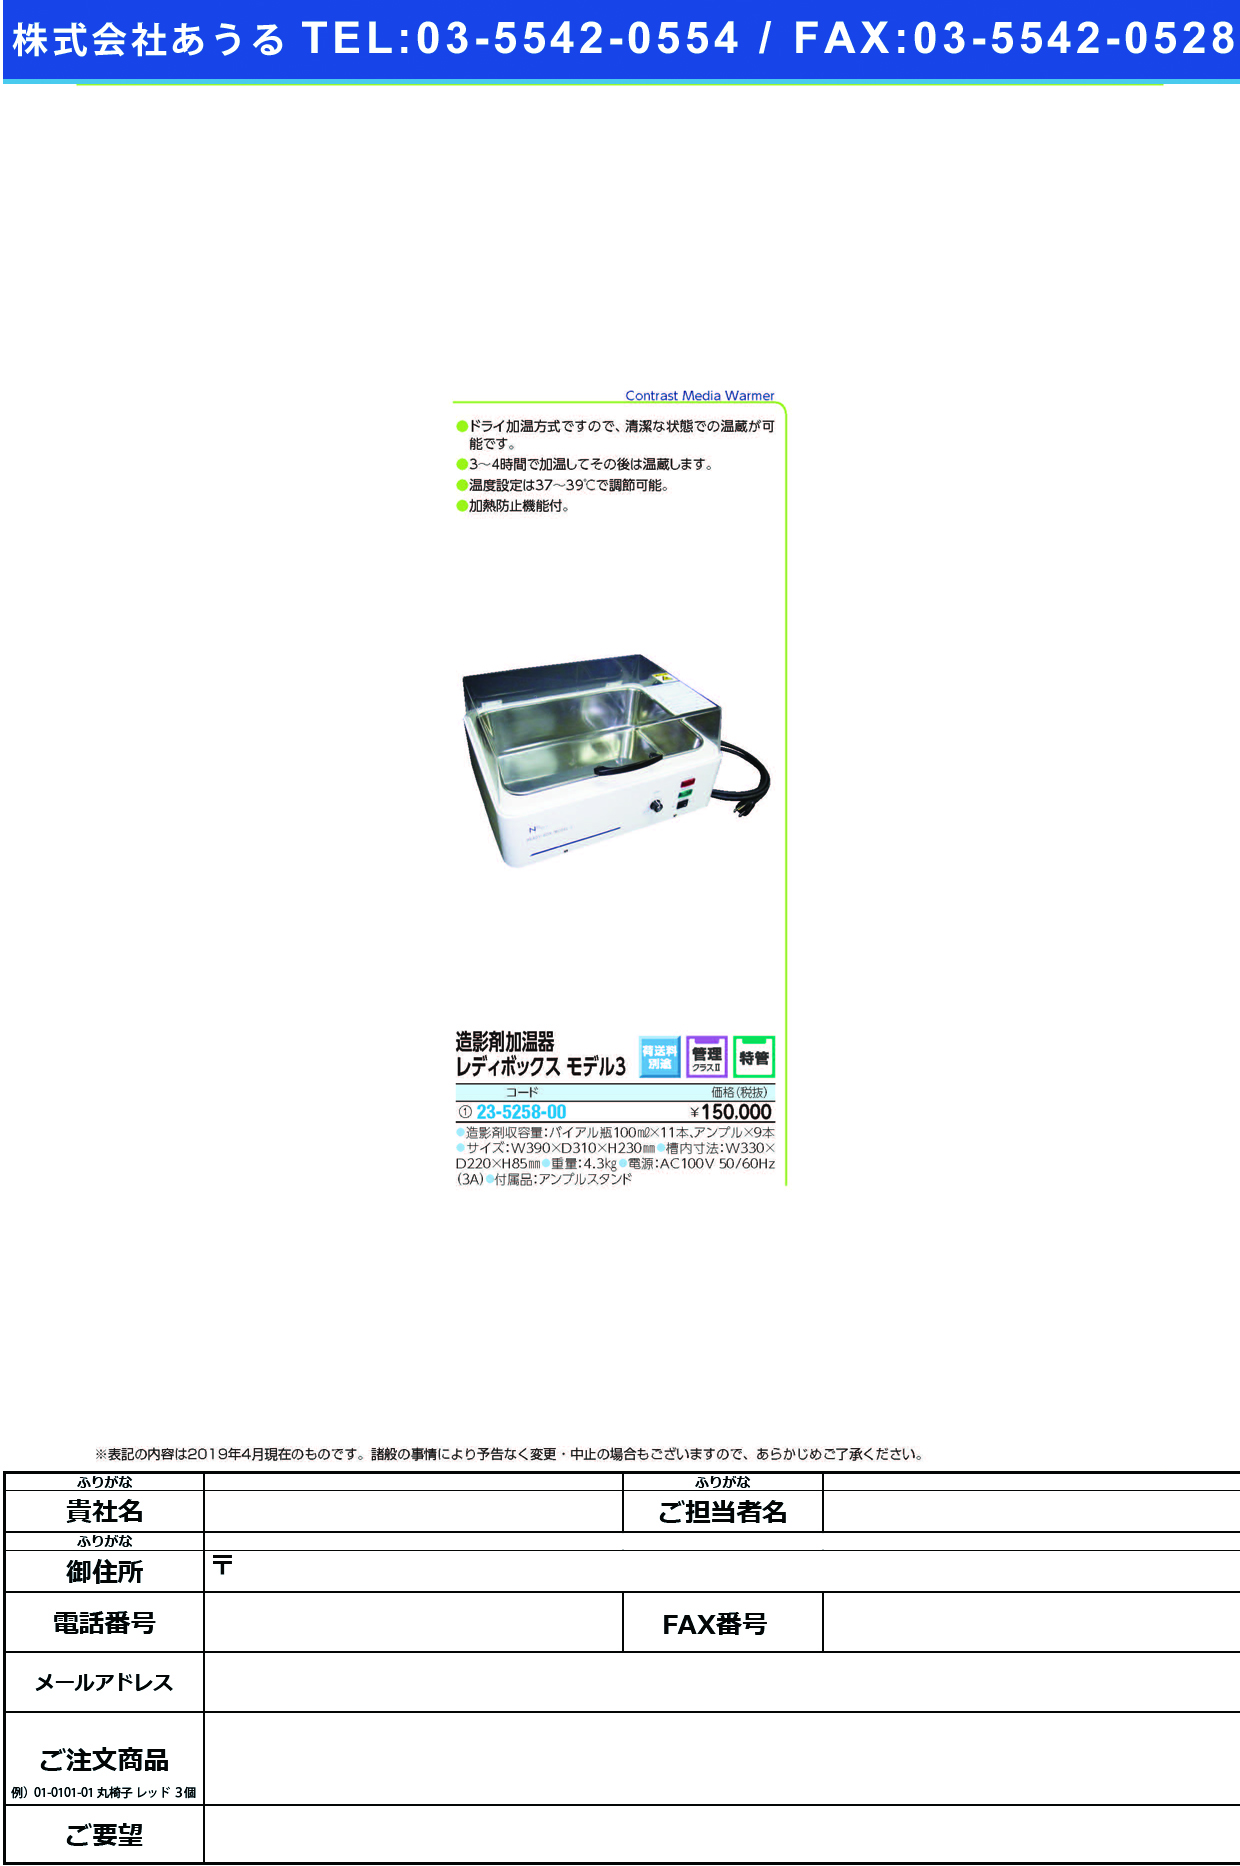 (23-5258-00)造影剤加温器レディボックスモデル３  ﾚﾃﾞｨﾎﾞｯｸｽﾓﾃﾞﾙ3【1台単位】【2019年カタログ商品】